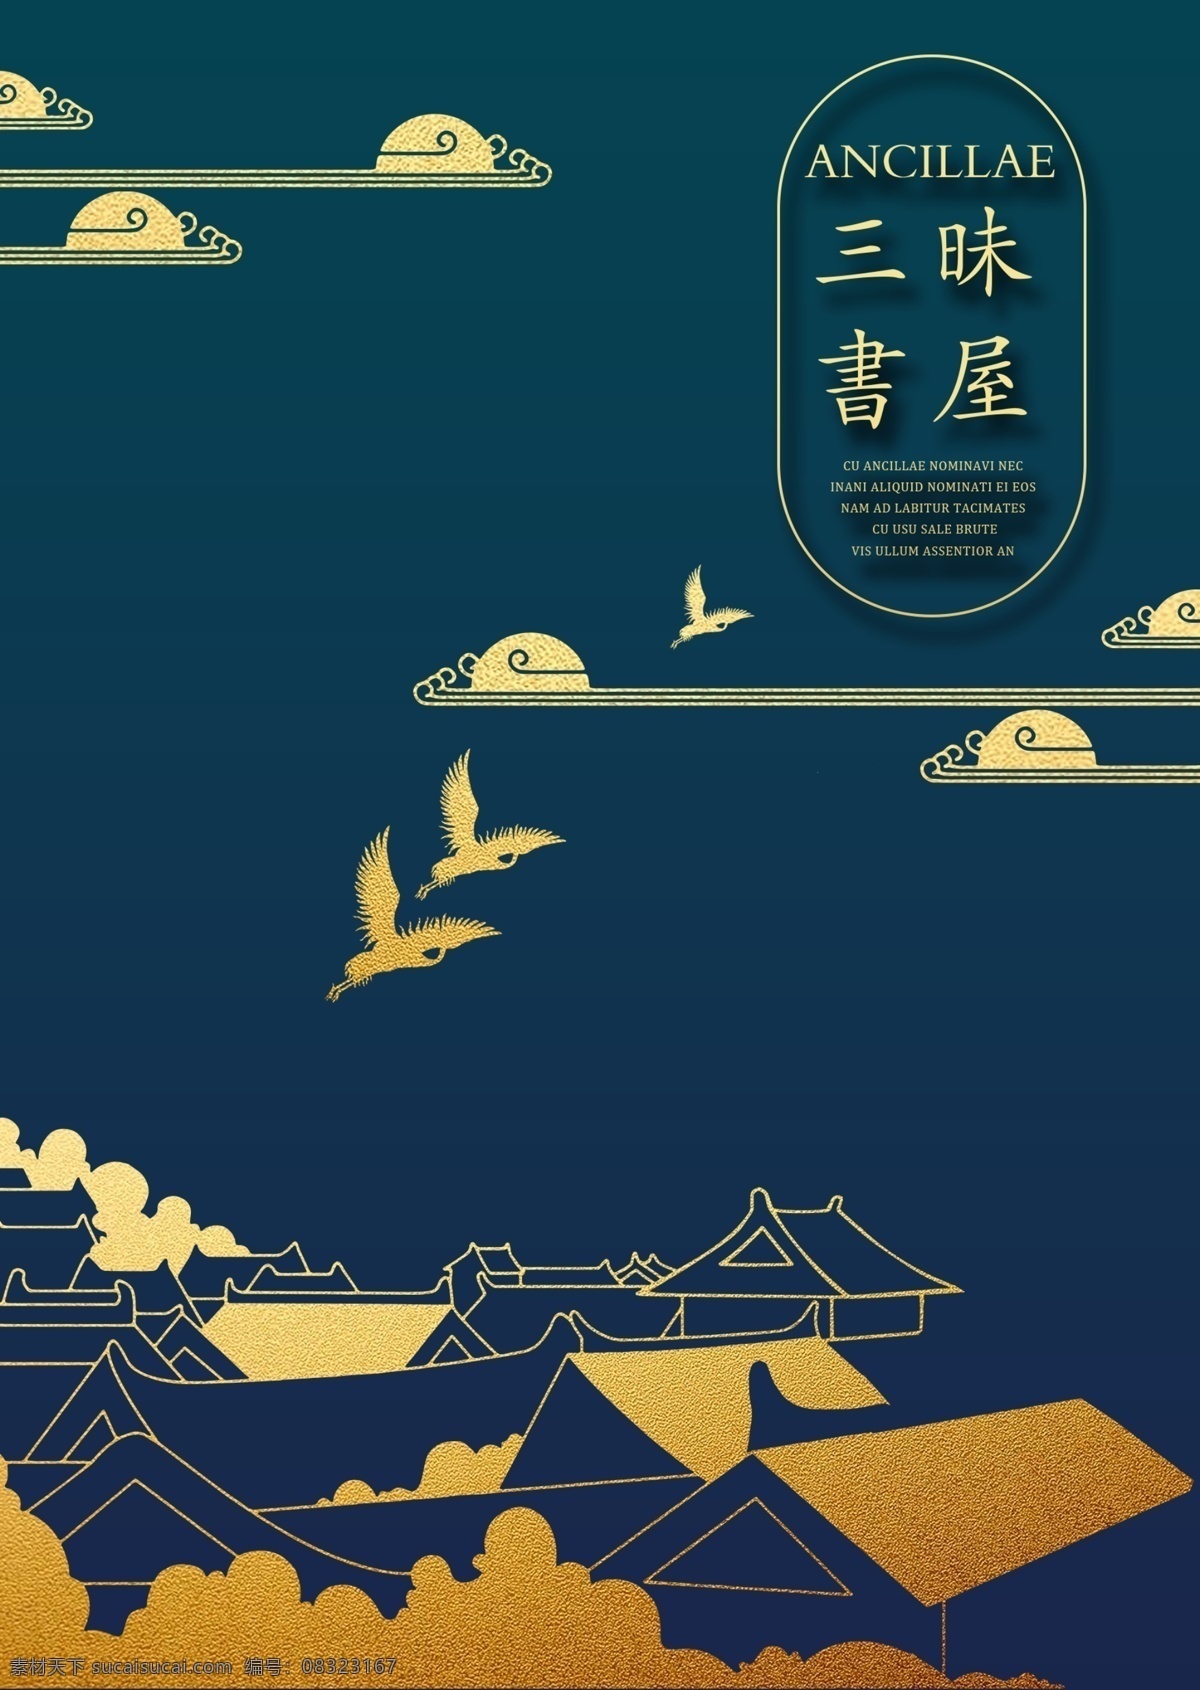 封面模板 ps 简约 中国风 大气 文化艺术